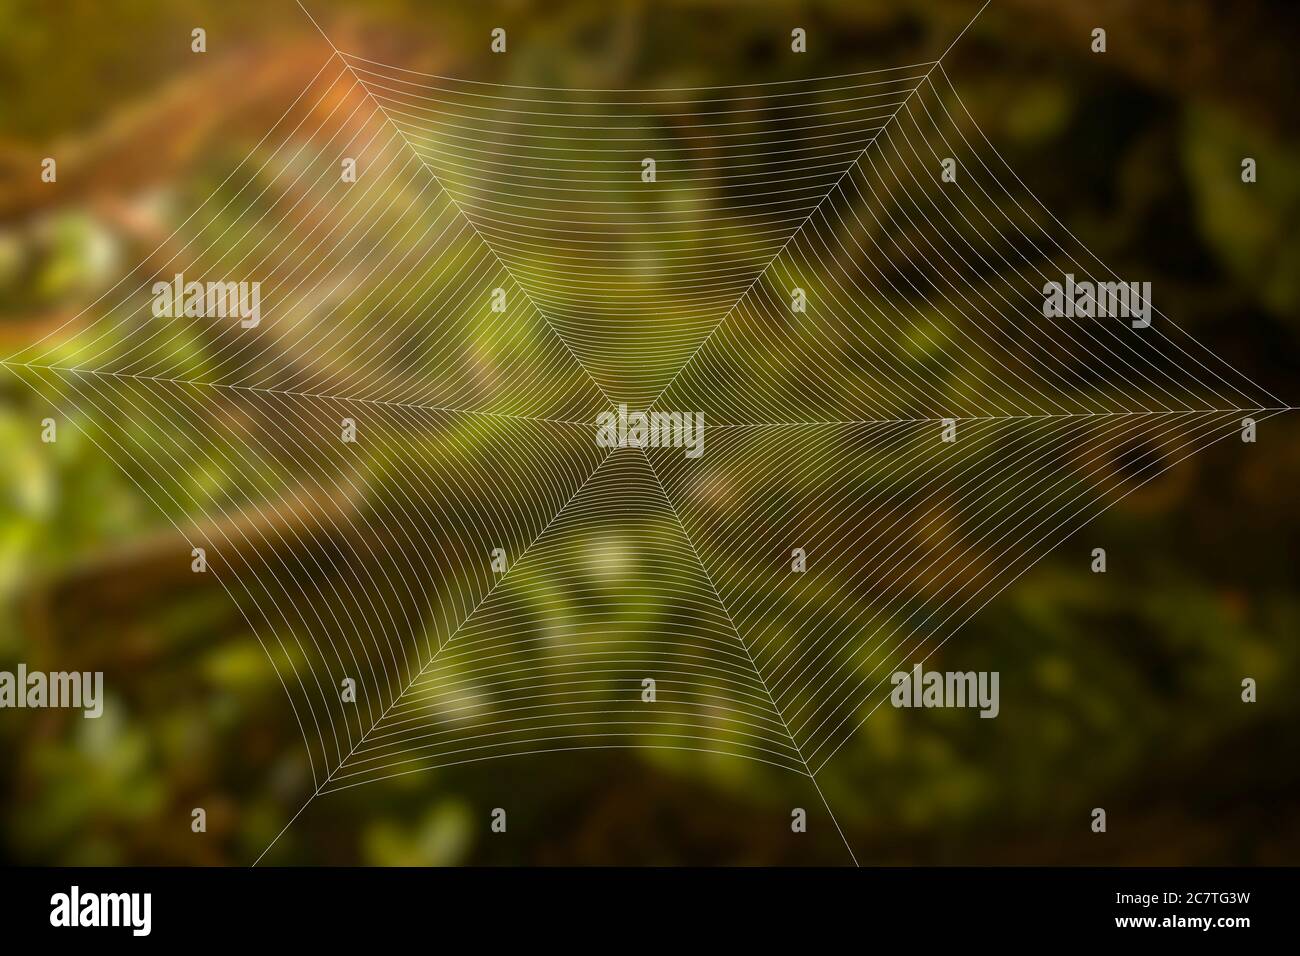 Ein seidiges Spinnennetz vor einem verschwommenen Regenwald Blick. Schönes Naturkonzept. Hochwertige Fotos Stockfoto